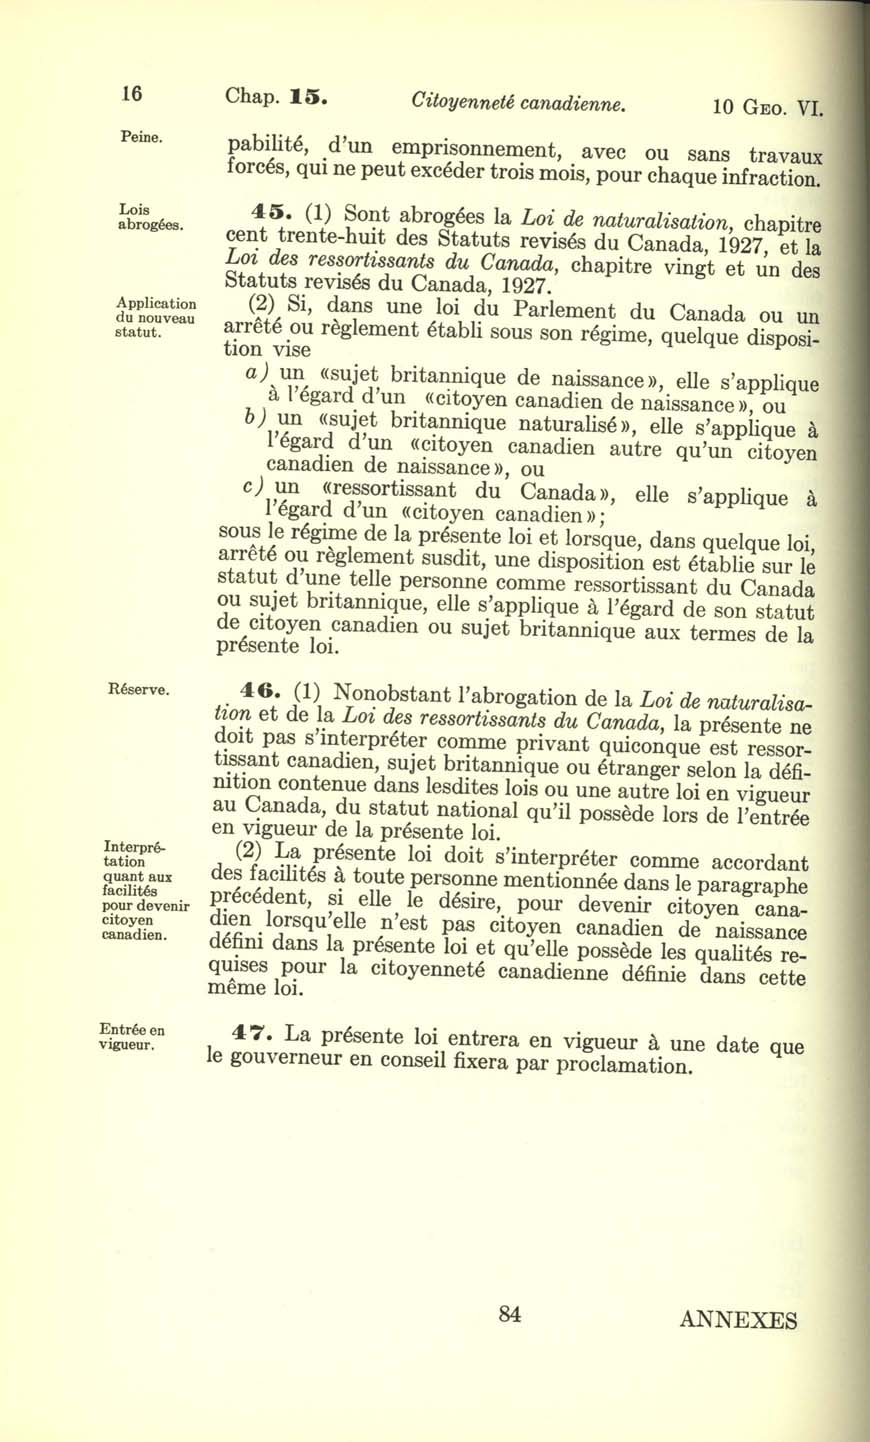 Chap. 15 Page 84 Loi sur la citoyenneté canadienne, 1947